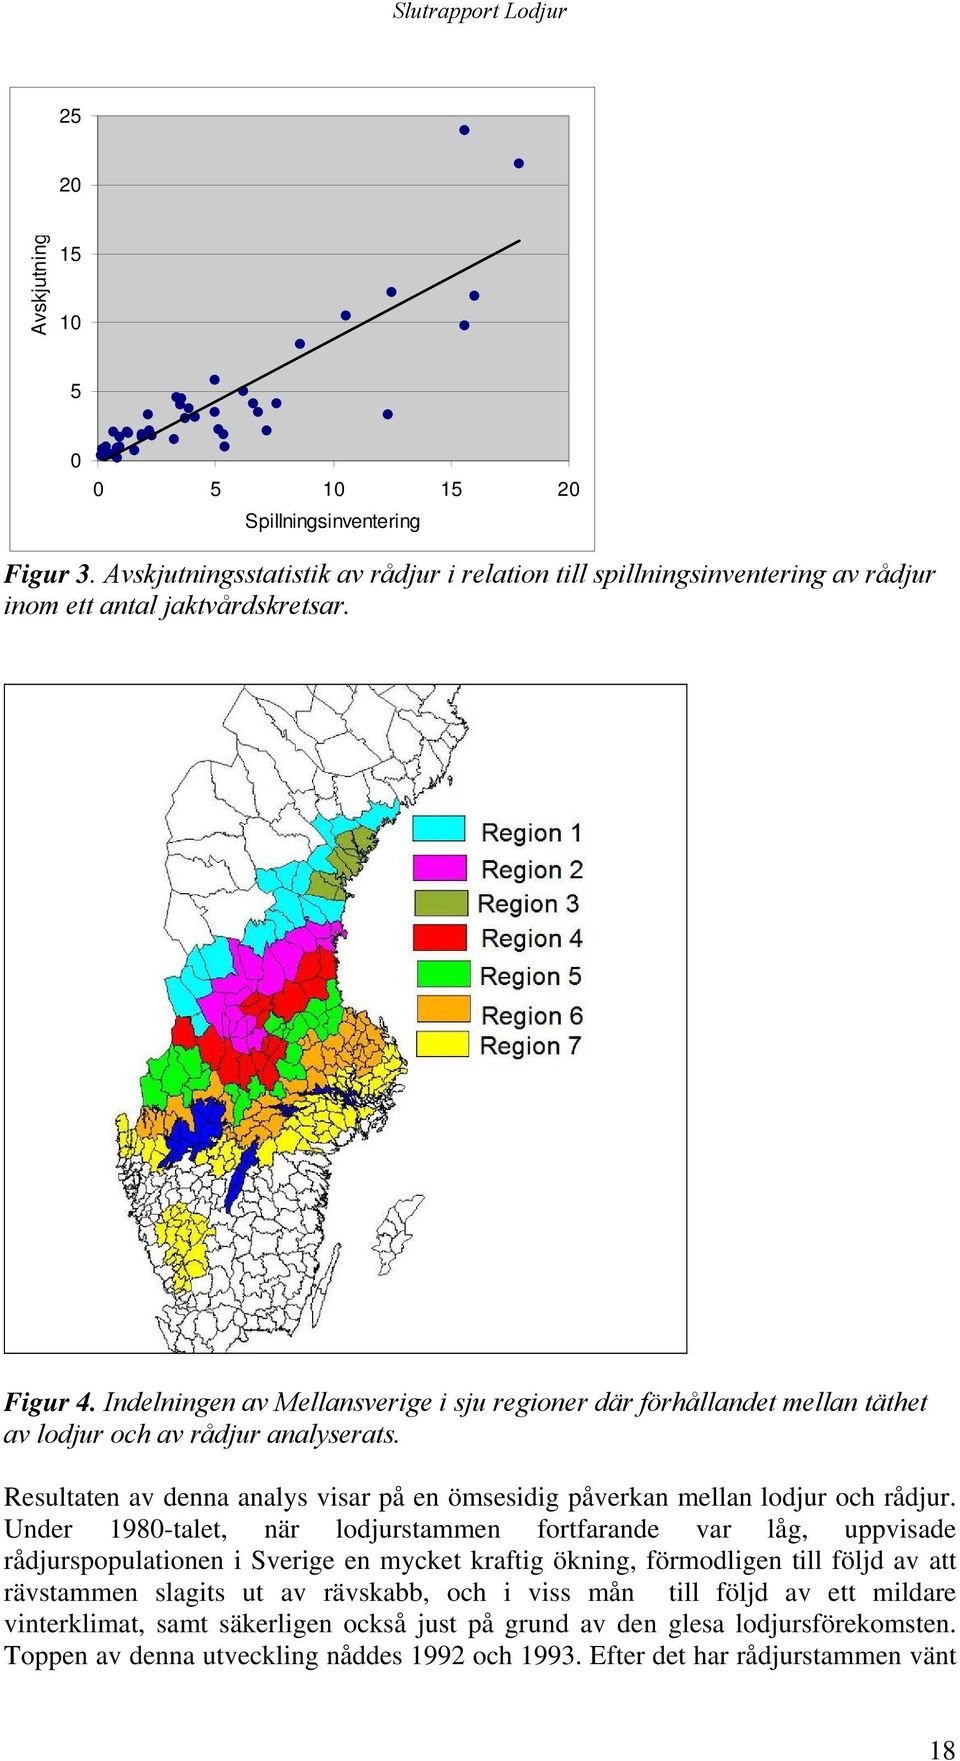 Under 198-talet, när lodjurstammen fortfarande var låg, uppvisade rådjurspopulationen i Sverige en mycket kraftig ökning, förmodligen till följd av att rävstammen slagits ut av rävskabb, och i